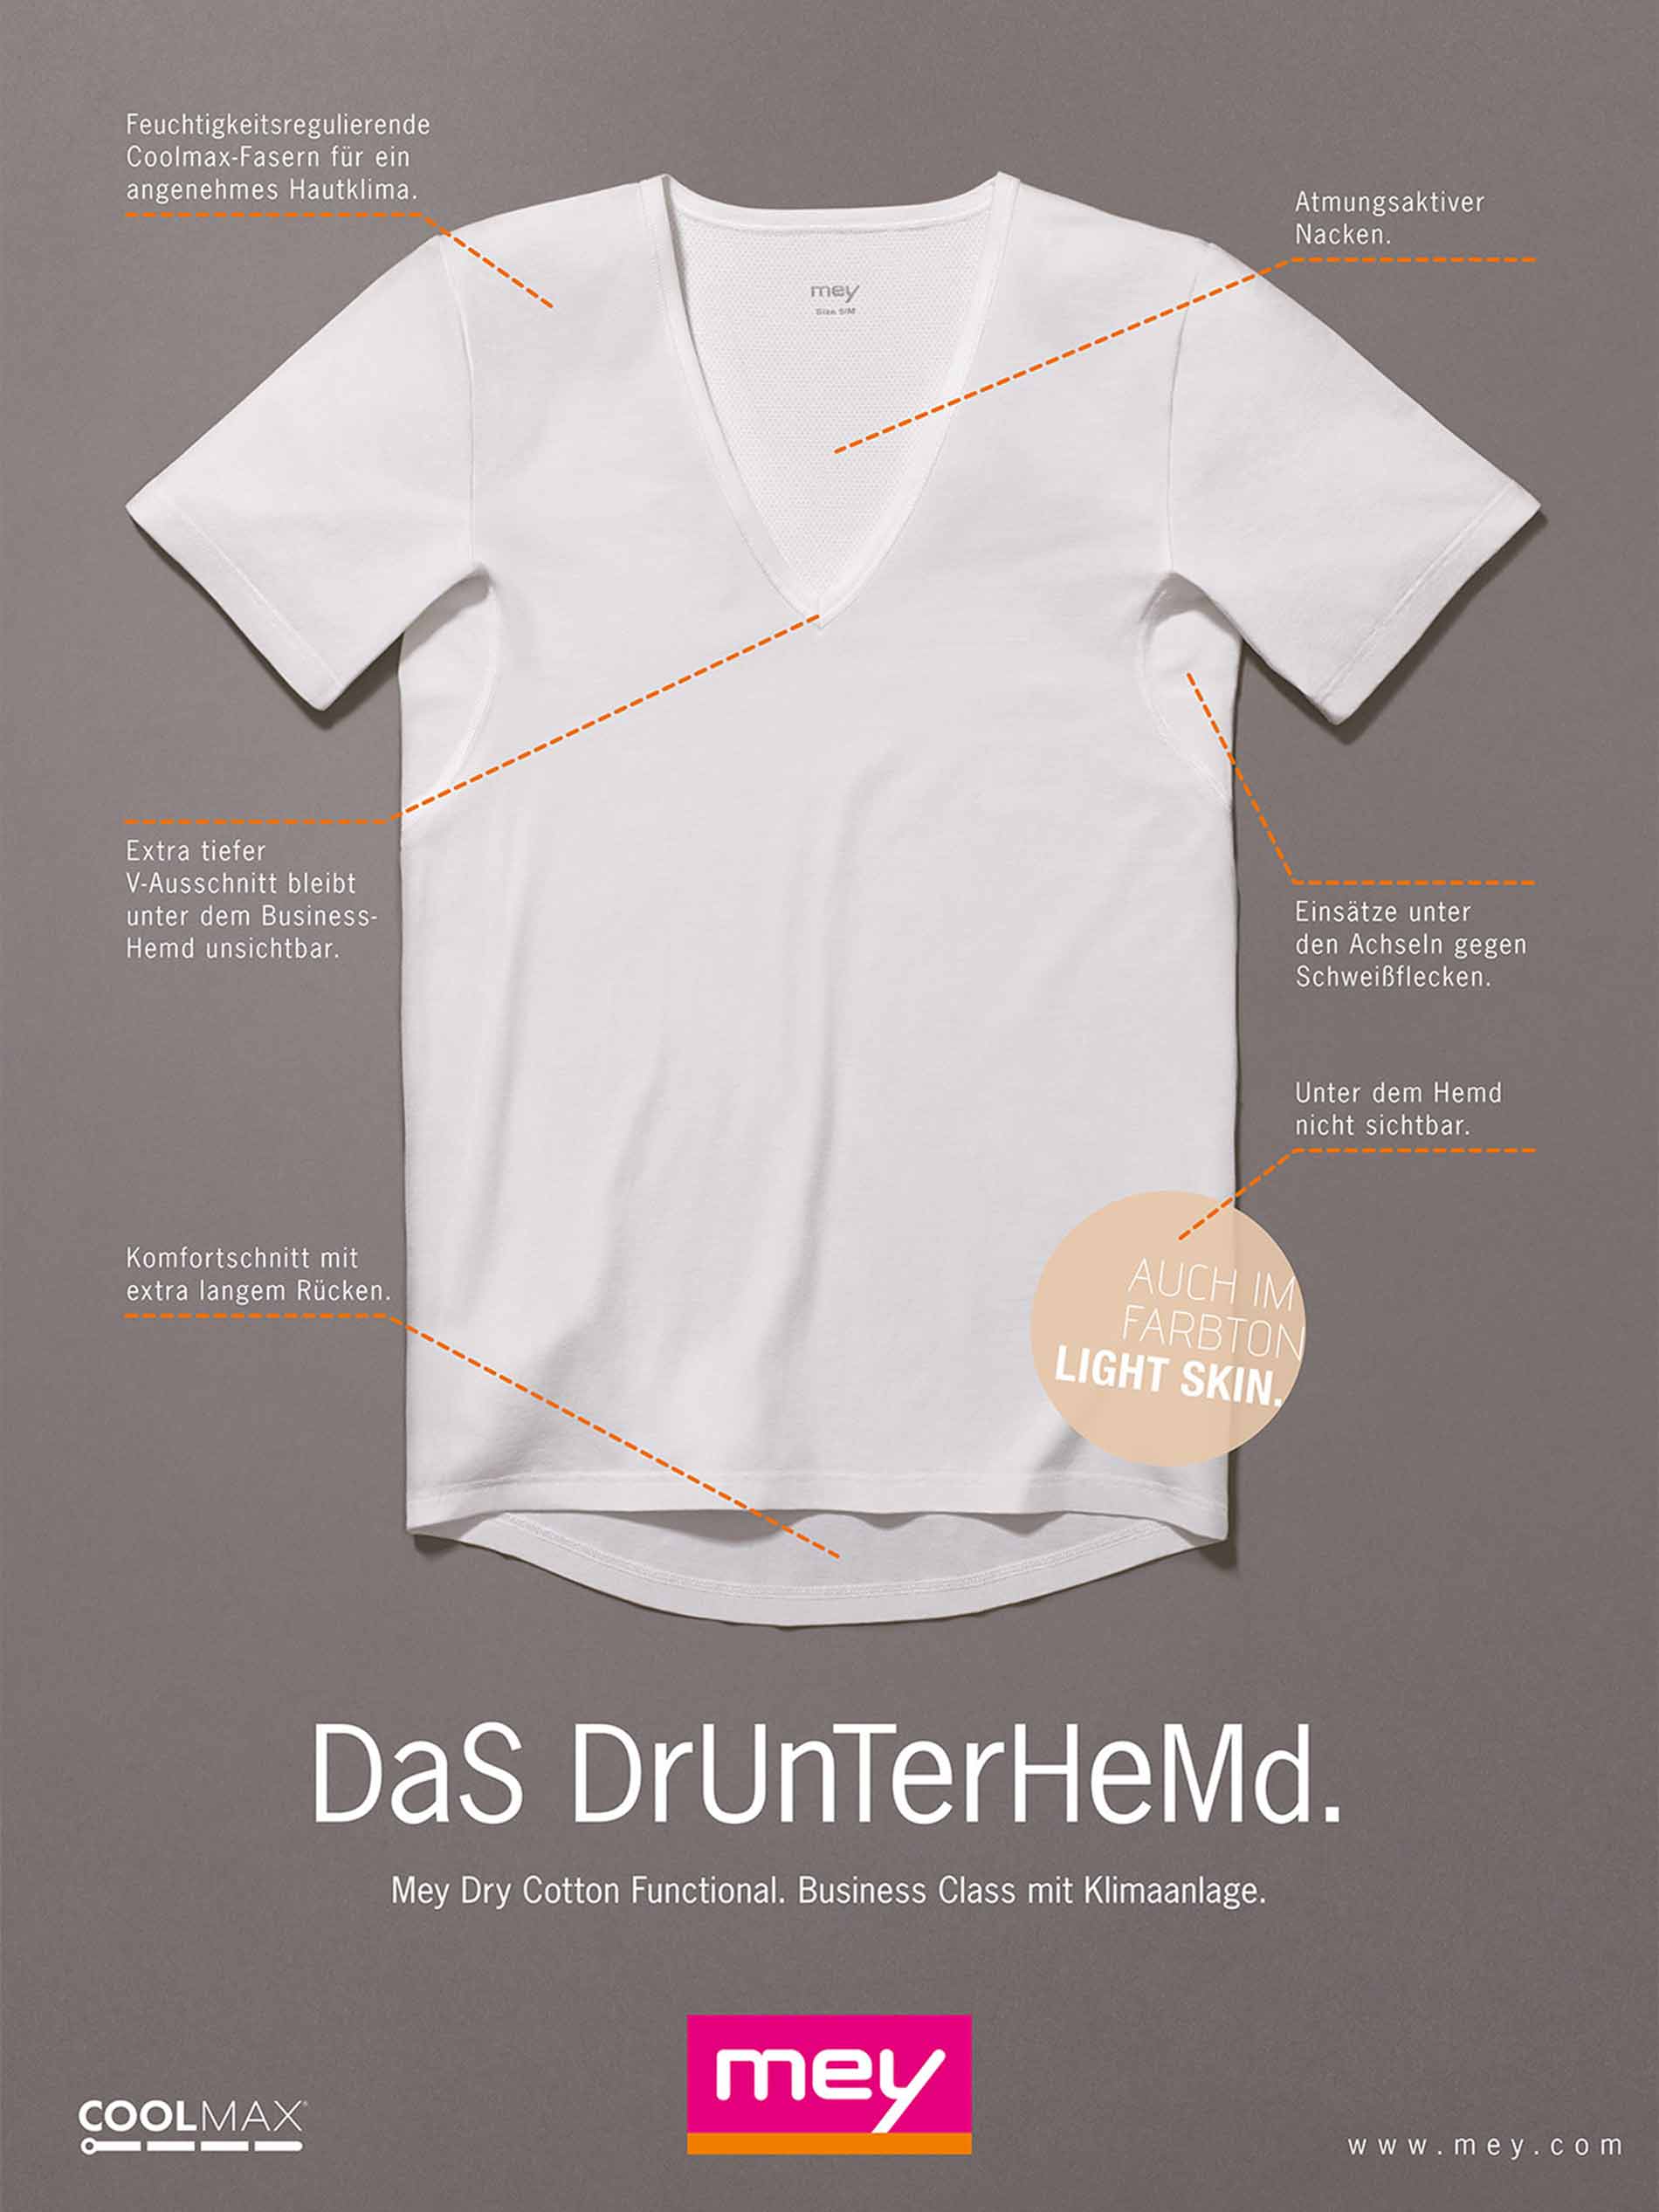 Anzeige für das Drunterhemd: Innovation für den Business-Mann, keine Schweißflecken und keine Geruchsbildung unter dem Hemd, Darstellung des Unterhemds mit Vorteilen | mey® 